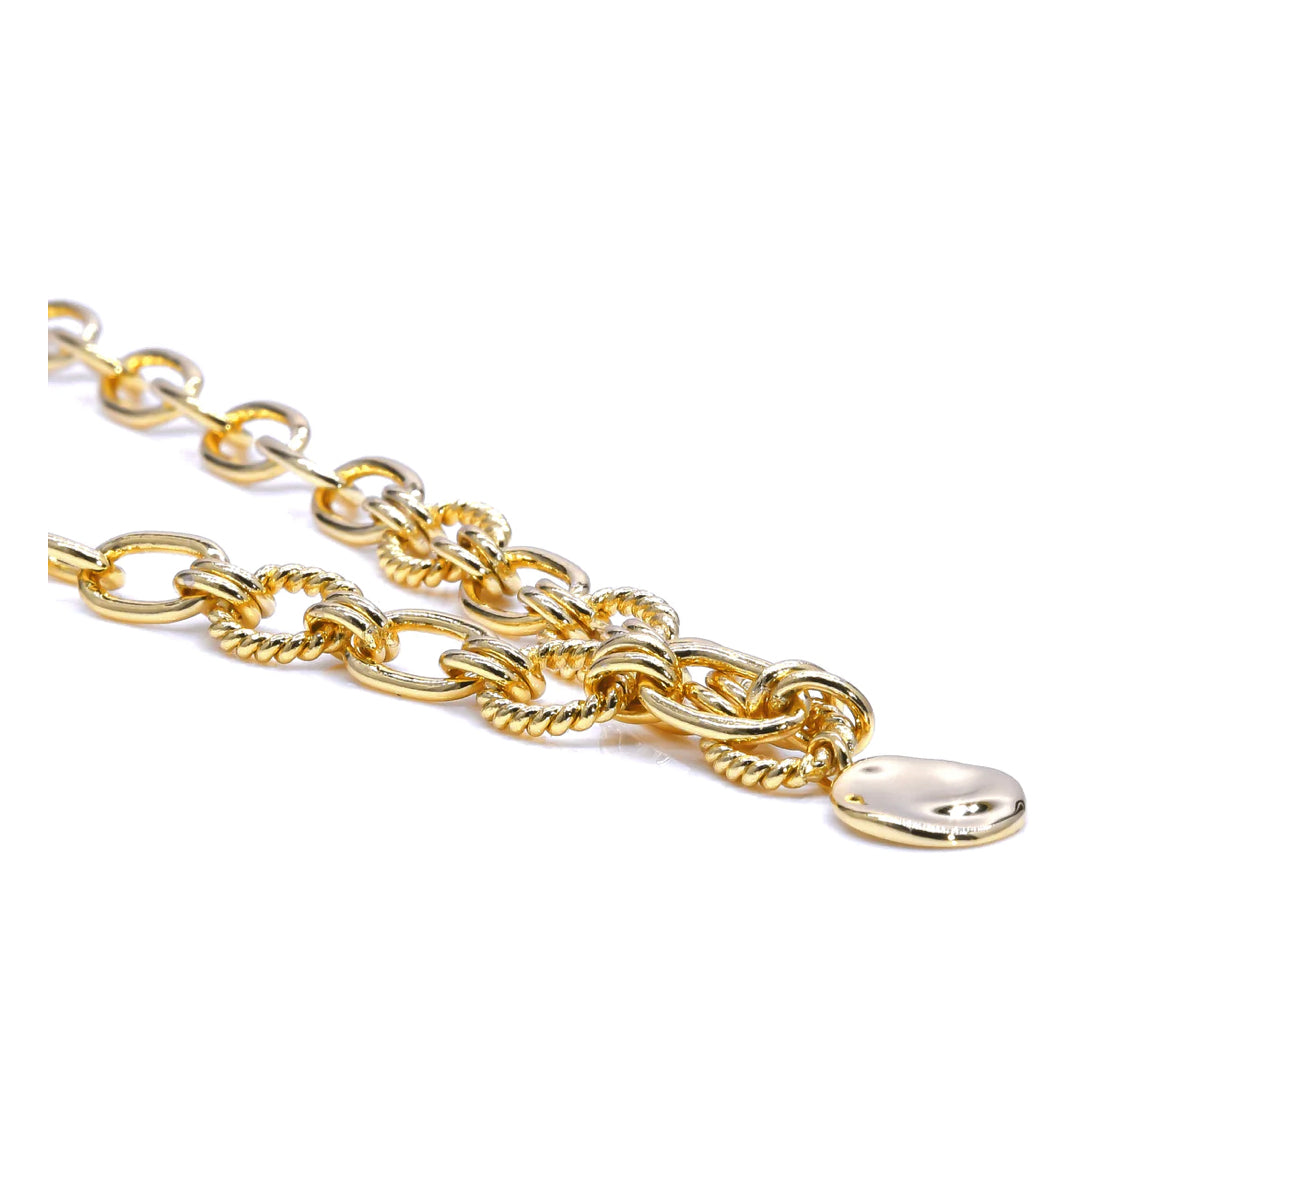 eLiasz & eLLa / Vivid Chain Necklace